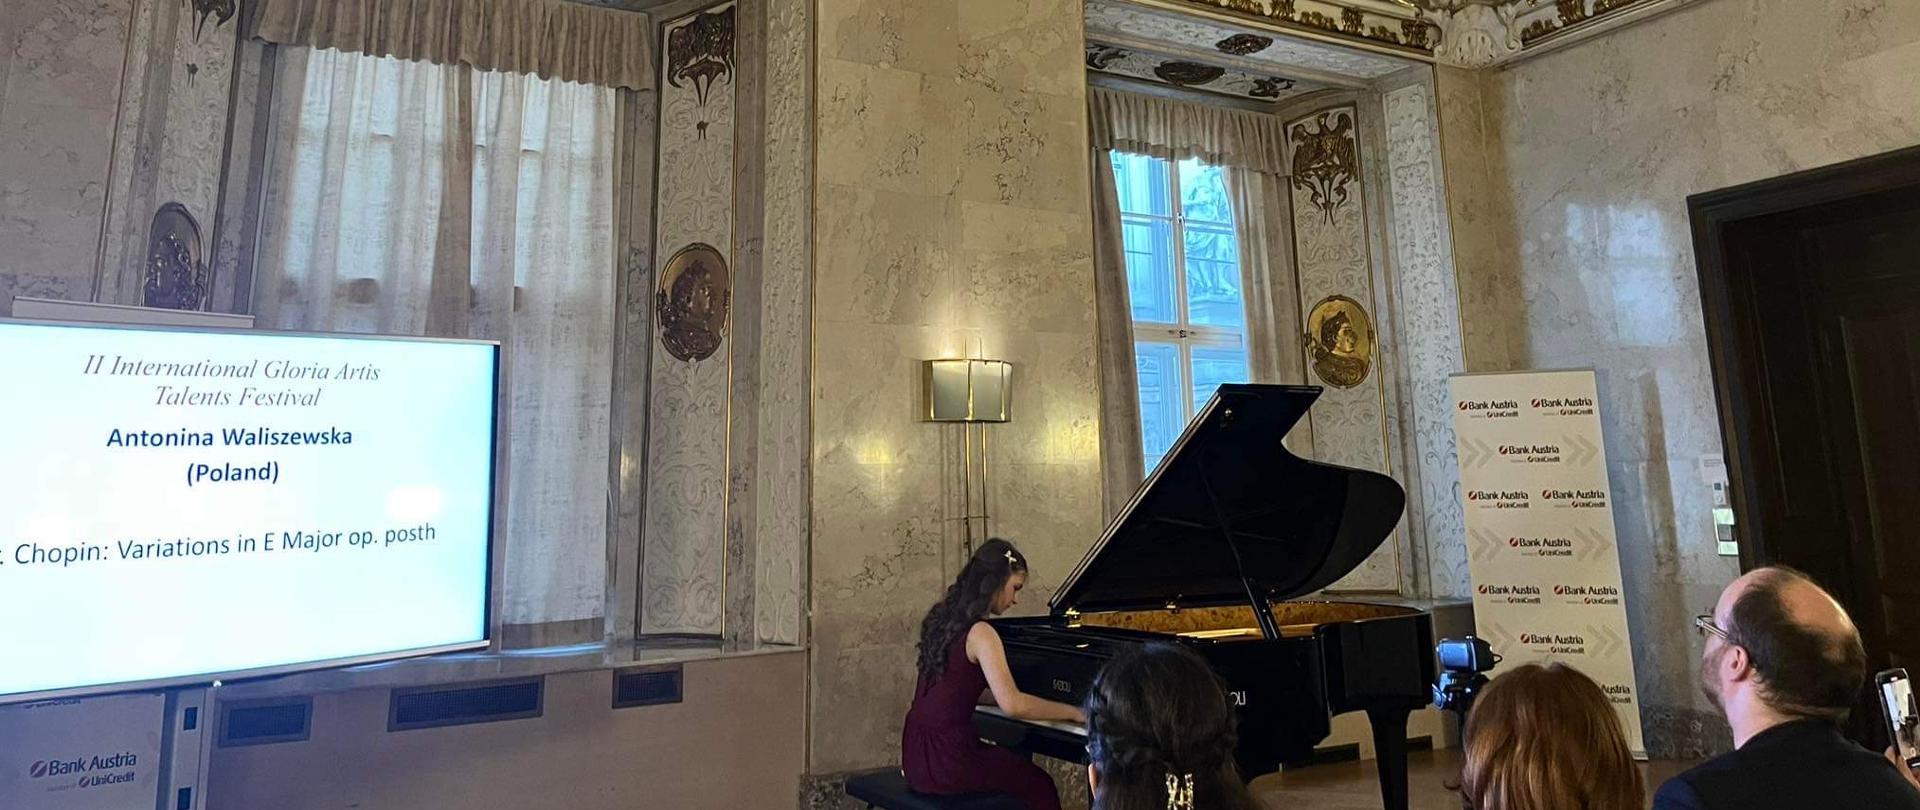 Pianistka siedzi przy fortepianie w sali Ratusza Miejskiego w Wiedniu ubrana w czerwoną wieczorową suknię., po lewo ekran, na którym wyświetlone jest jej nazwisko i program 